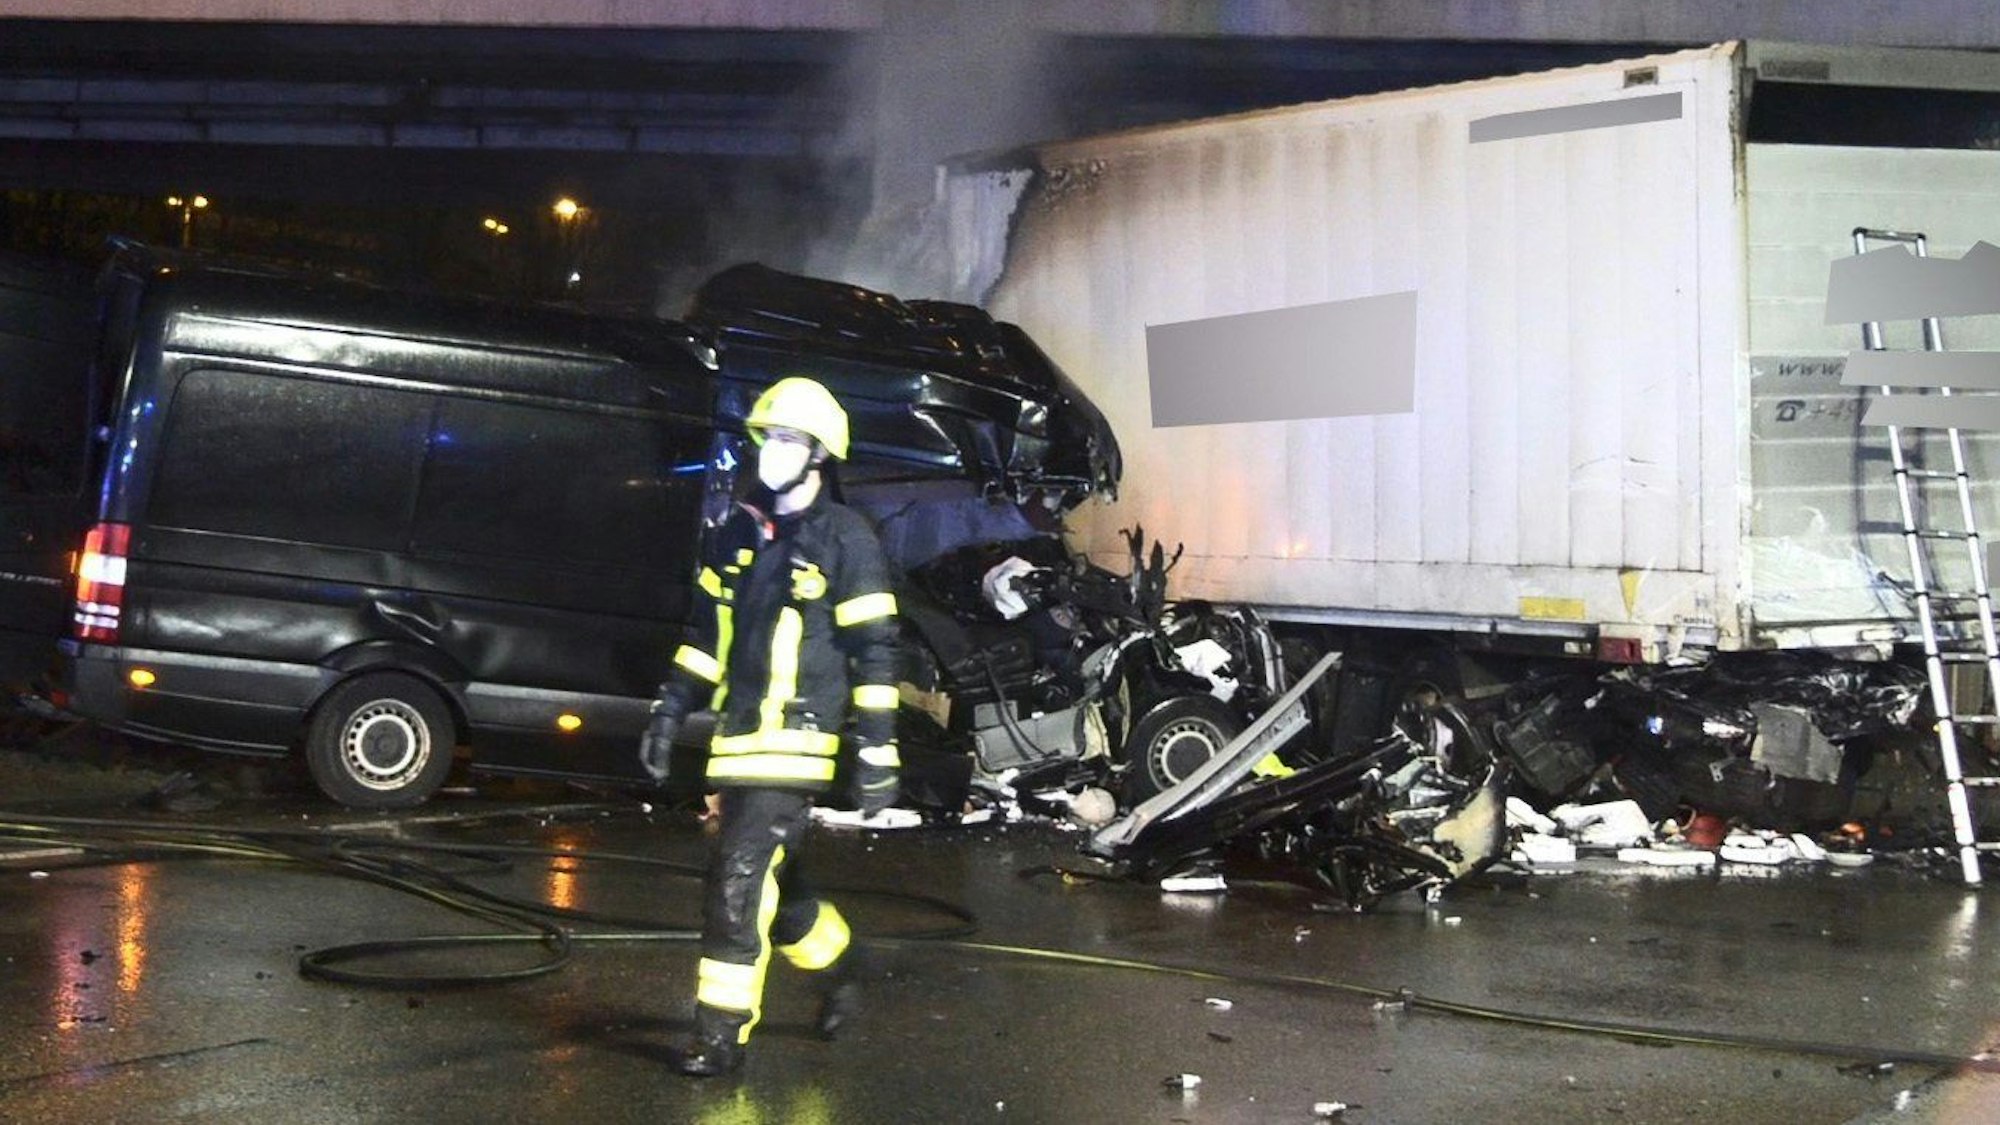 28.01.2022, Hessen: Bei einem Verkehrsunfall auf der Autobahn 3 am Frankfurter Kreuz ist ein Lkw-Fahrer ums Leben gekommen und drei weitere Personen sind verletzt worden.